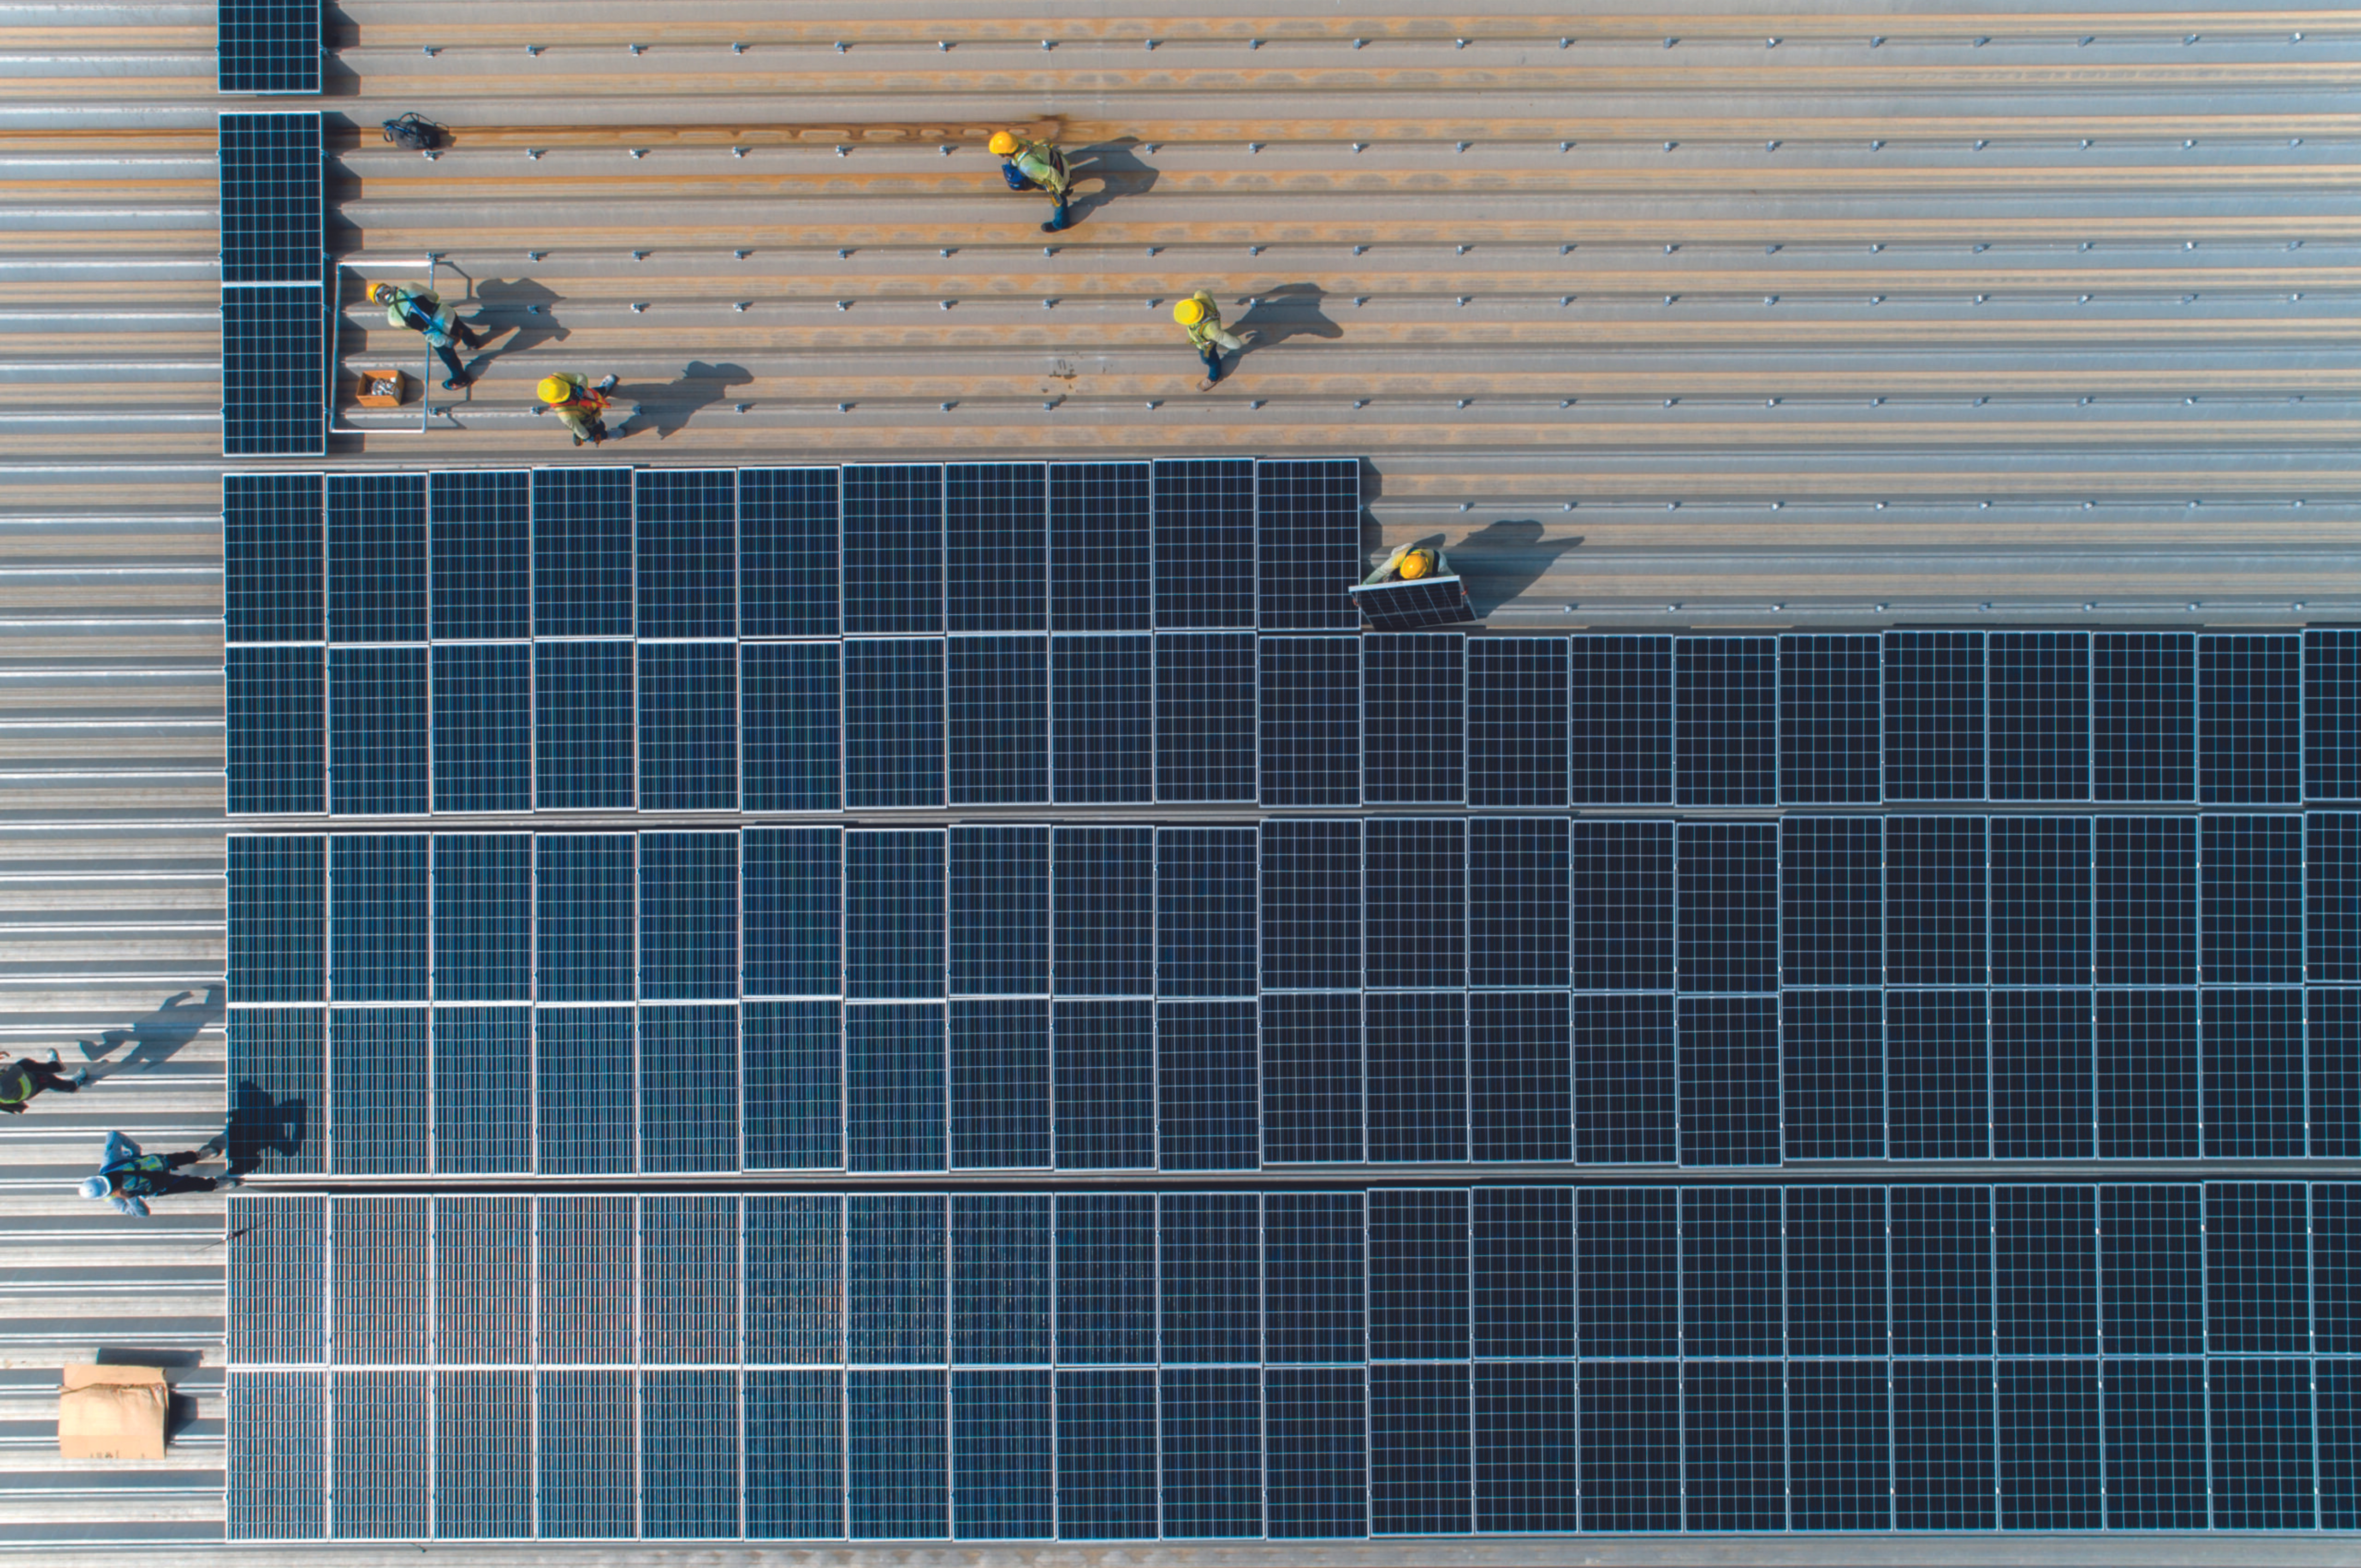 Installation de panneaux solaires photovoltaïques sur le toit d'une entreprise